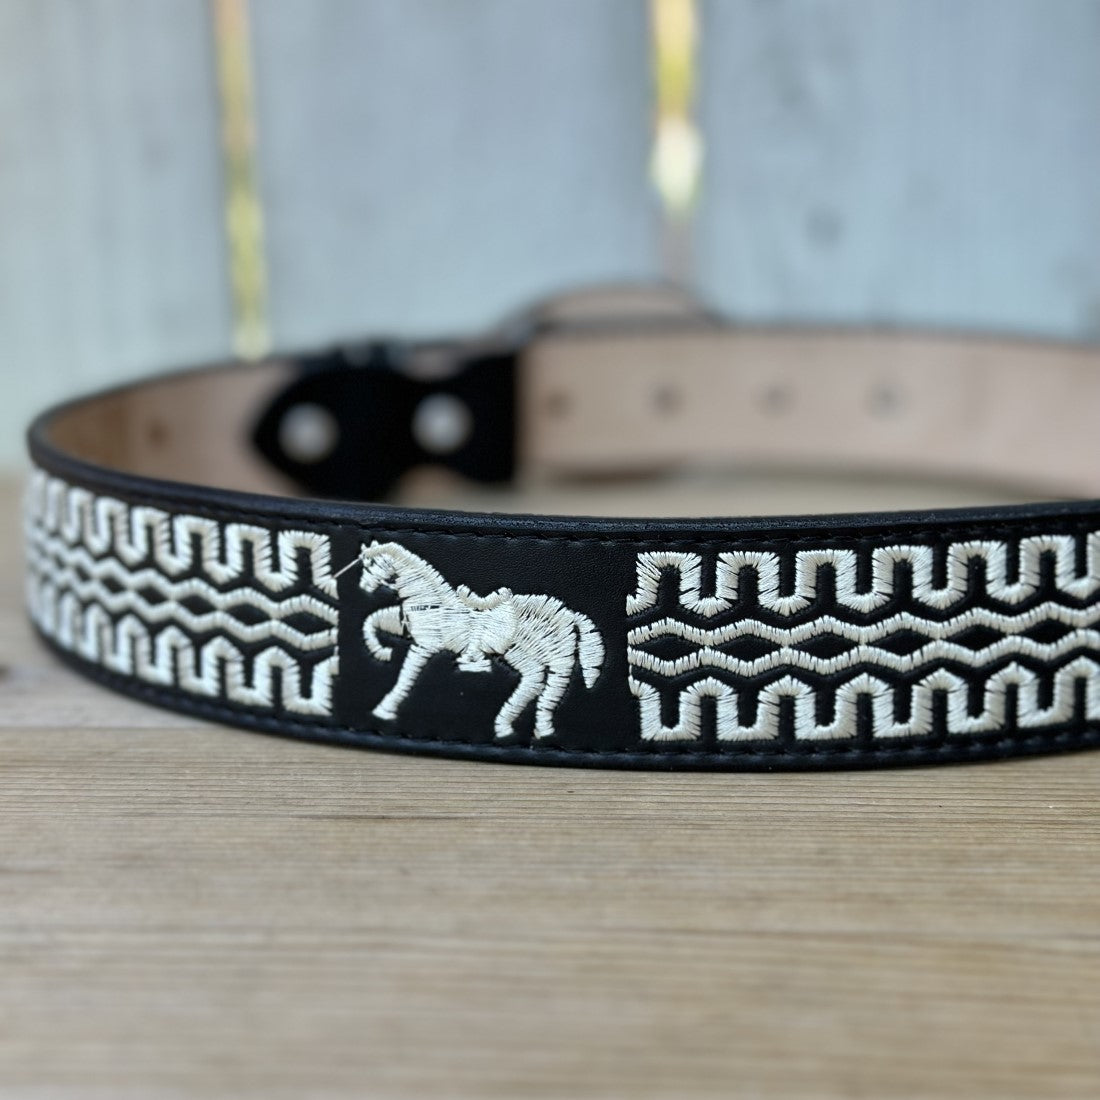 Cinturon Vaquero Natural Caballo de 1 1/2" - Cinturones Vaqueros para Hombre - CInturones Vaqueros Bordados (3)